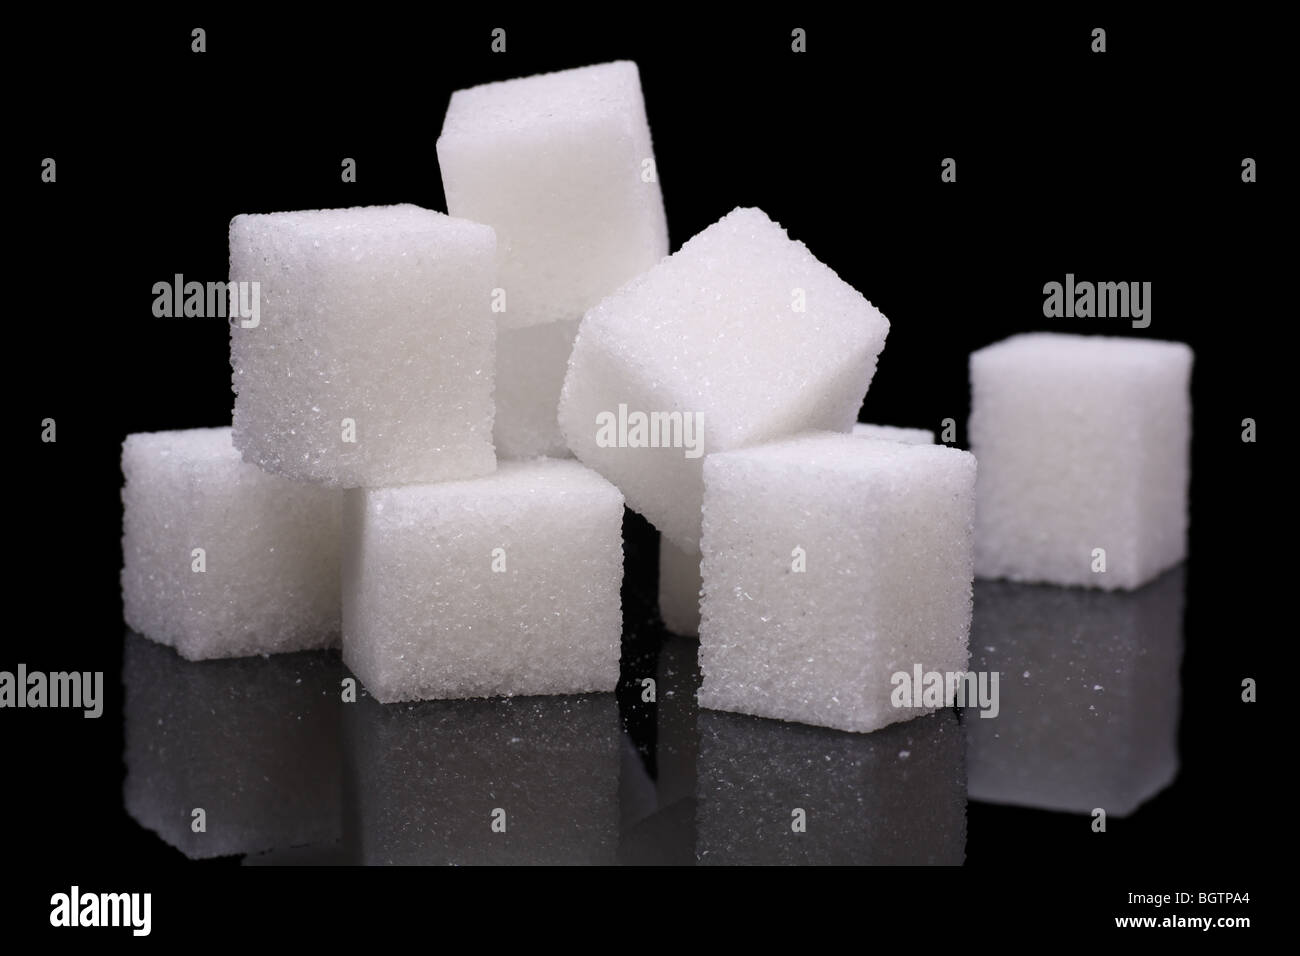 Des morceaux de sucre sur une surface réfléchissante Banque D'Images